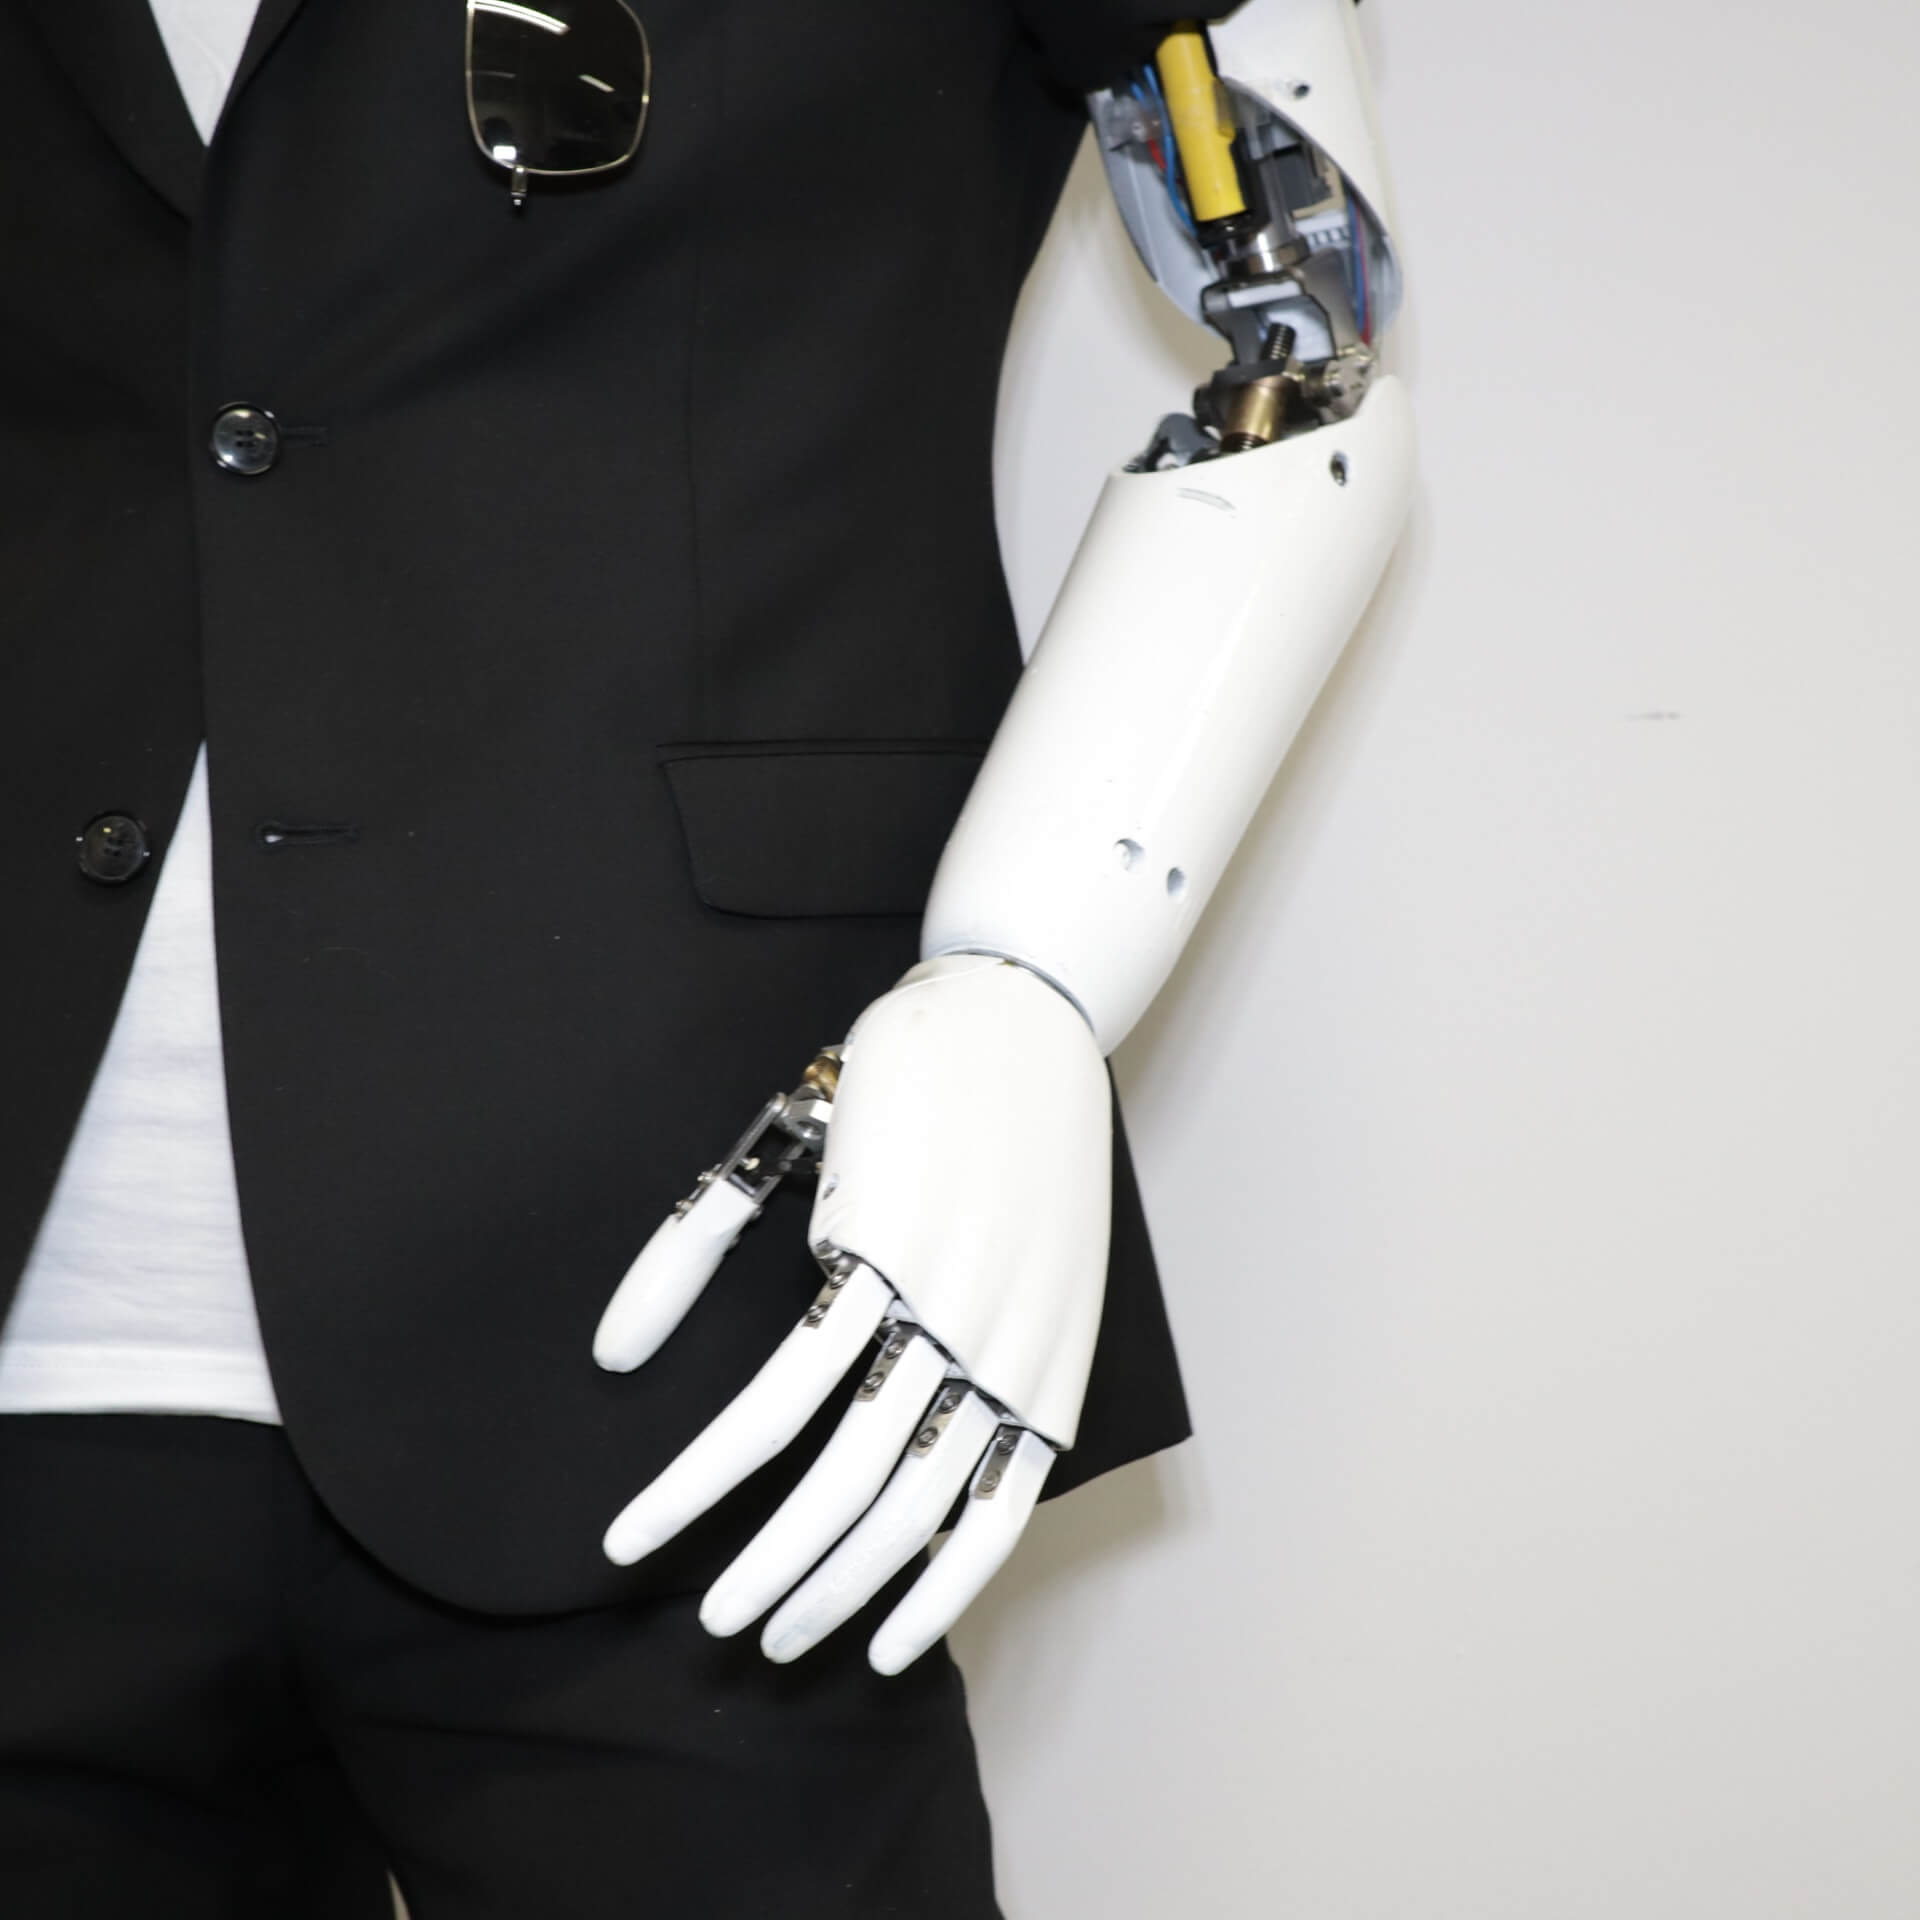 Proteza bioniczna ręki na manekinie, obok plakat informacyjny BioEngineering